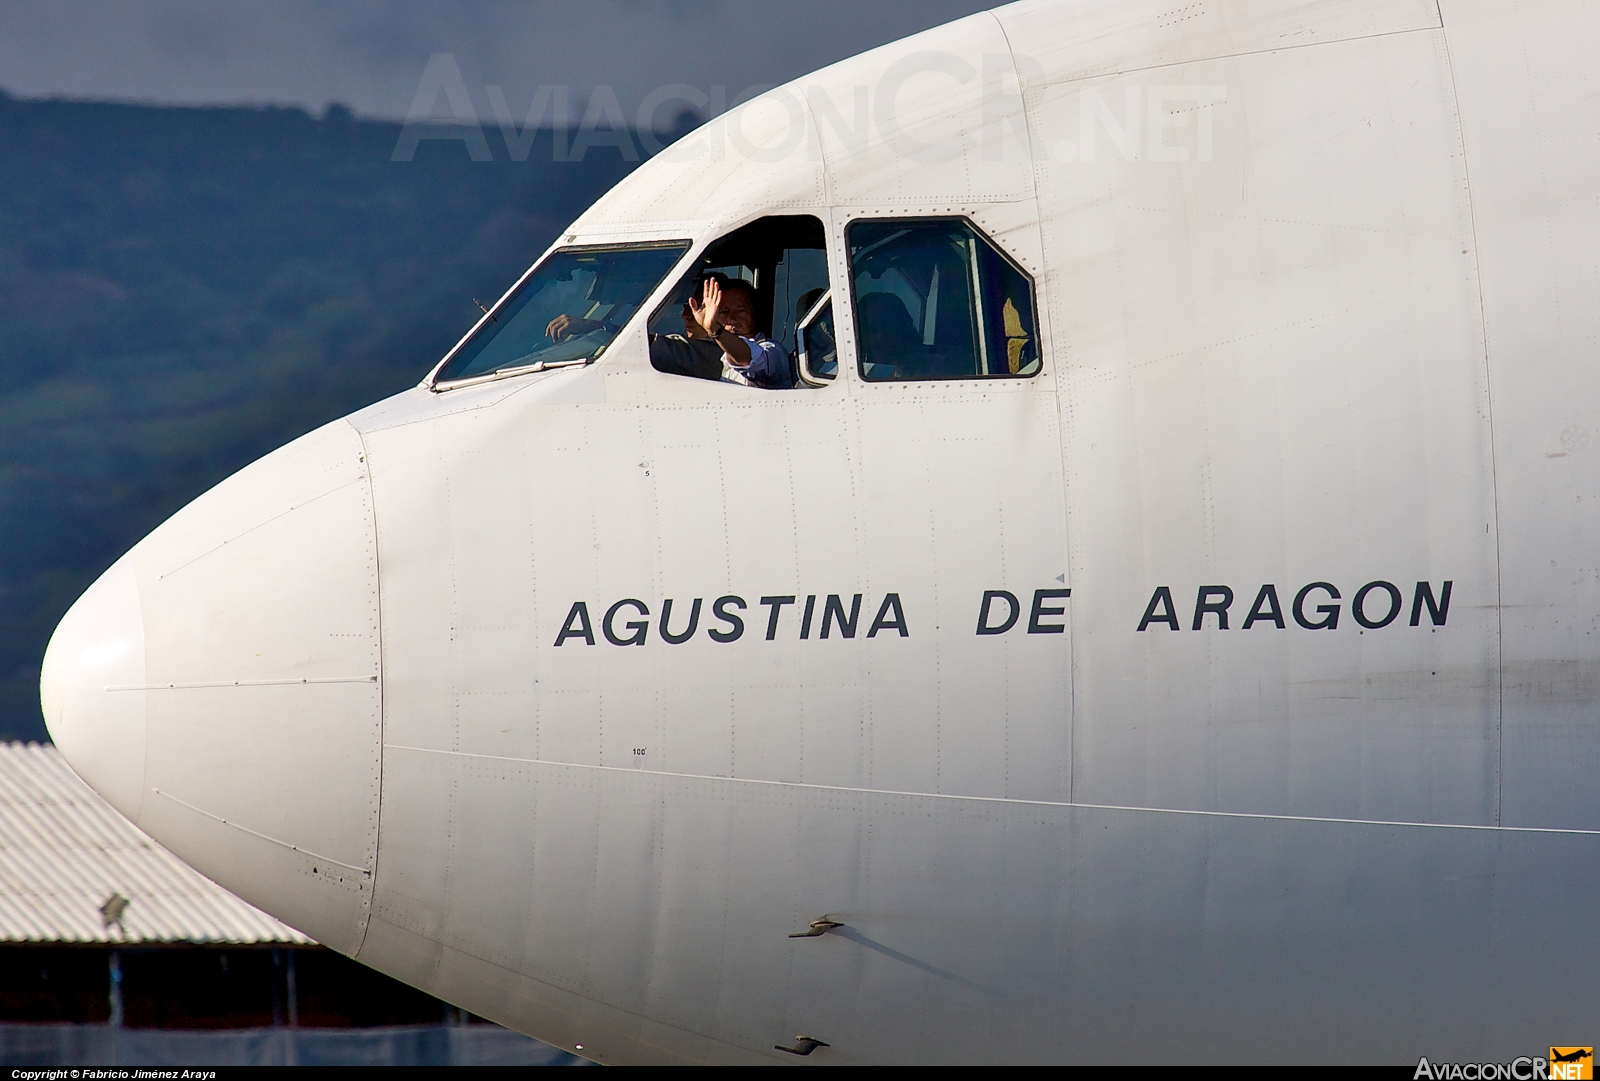 EC-GUP - Airbus A340-313X - Iberia